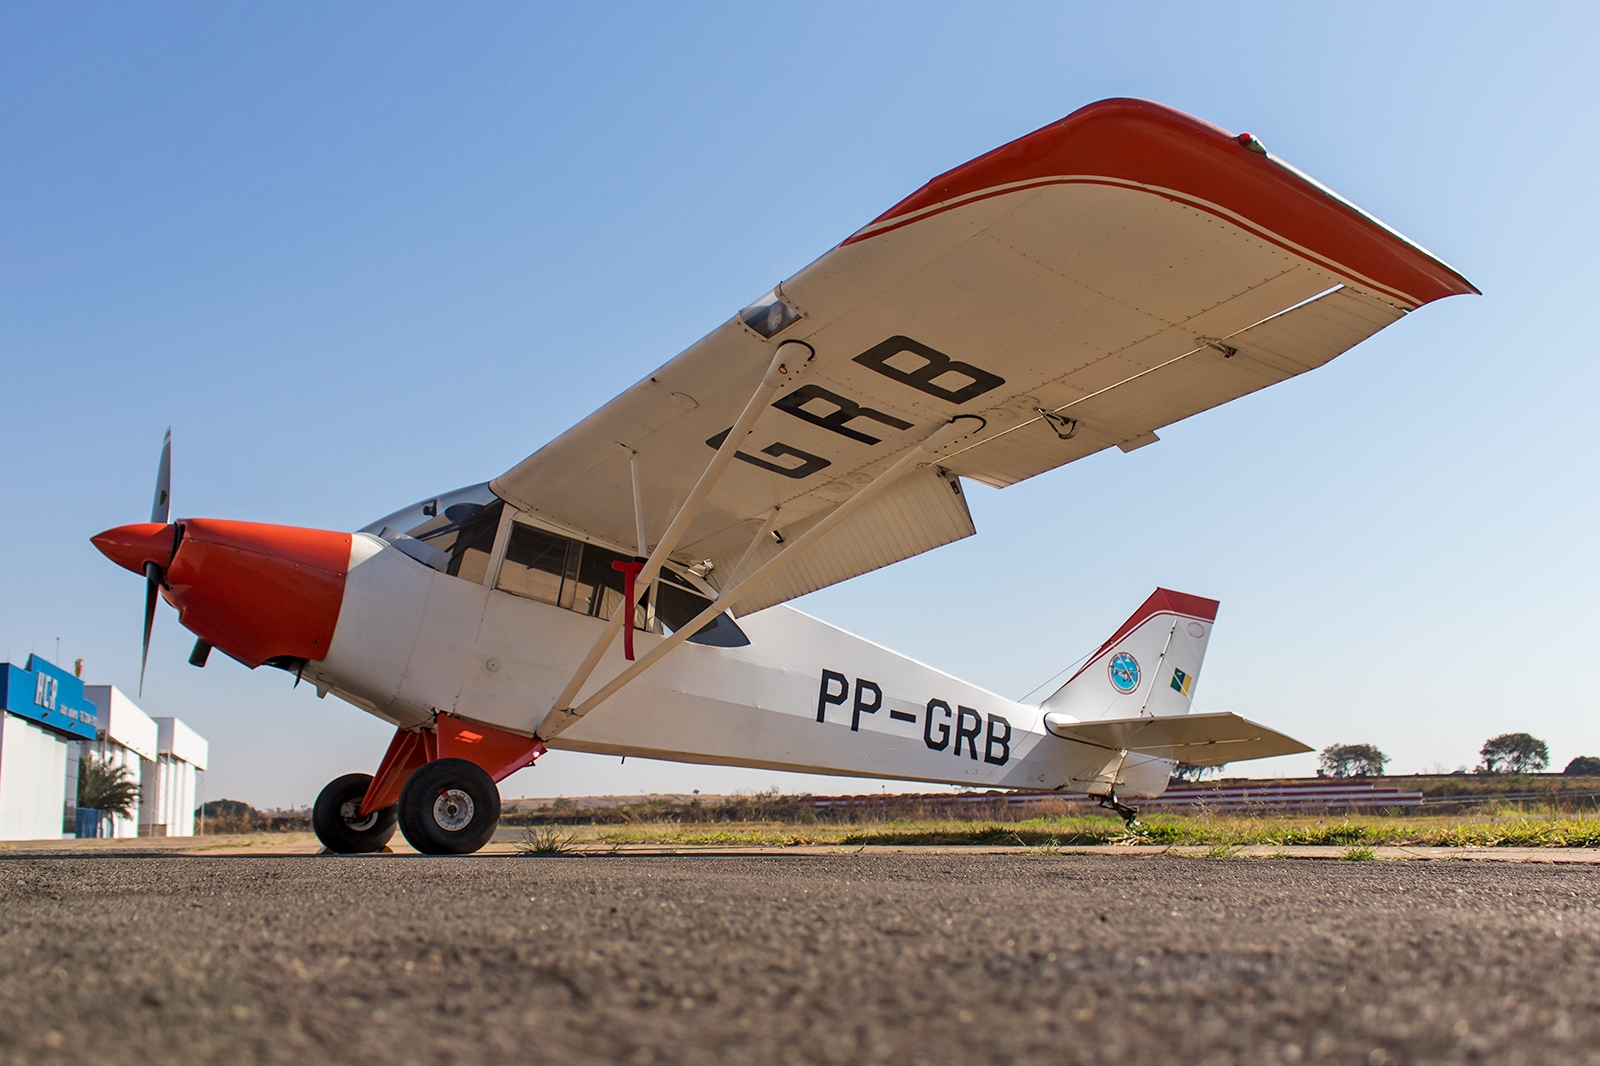 PP-GRB - Aero Boero AB-115